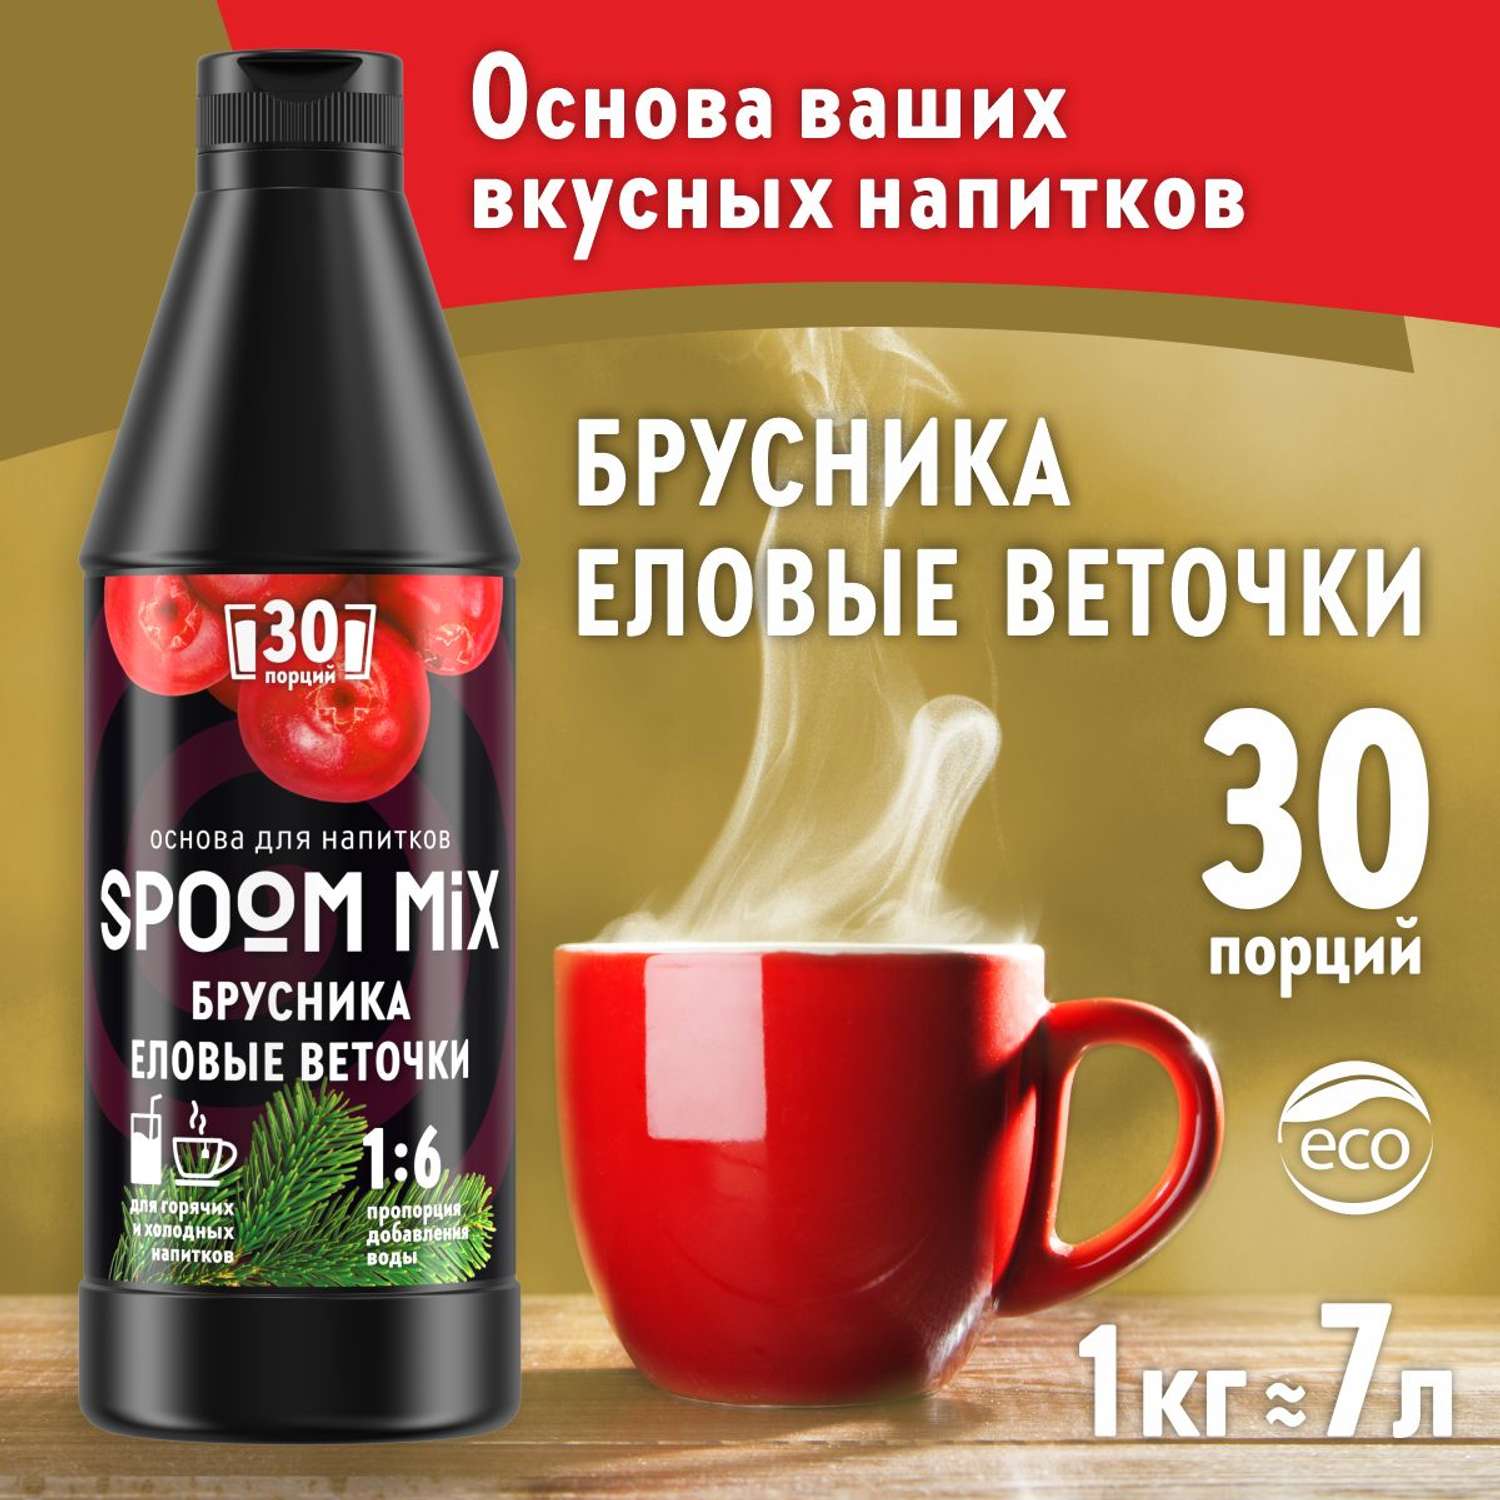 Основа для напитков SPOOM MIX Брусника еловые веточки 1 кг - фото 1